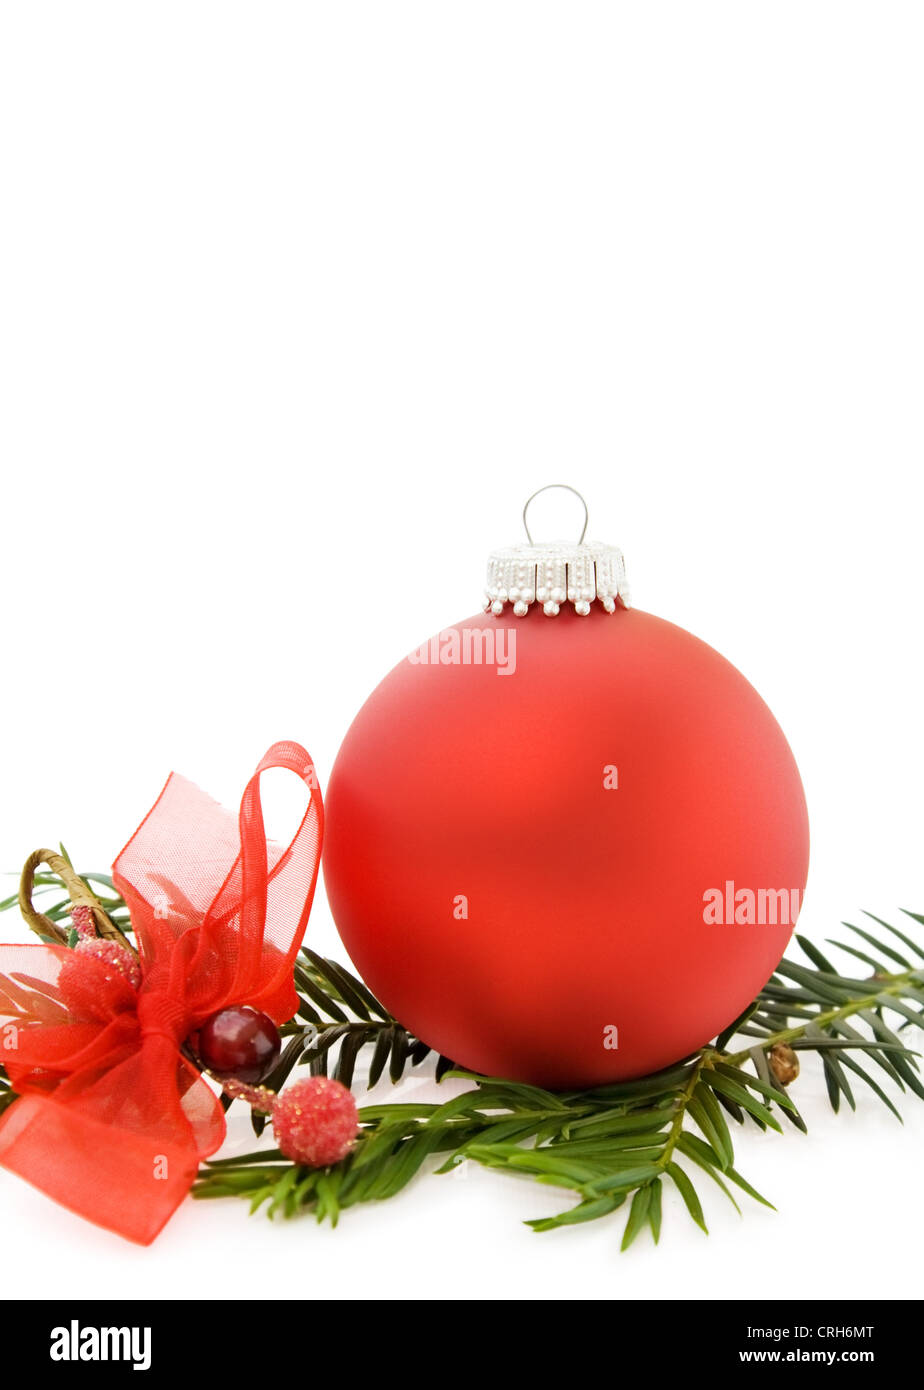 Carte de vœux de Noël avec festive babiole rouge, rubans et pine tree branch. Isolé sur fond blanc. Banque D'Images